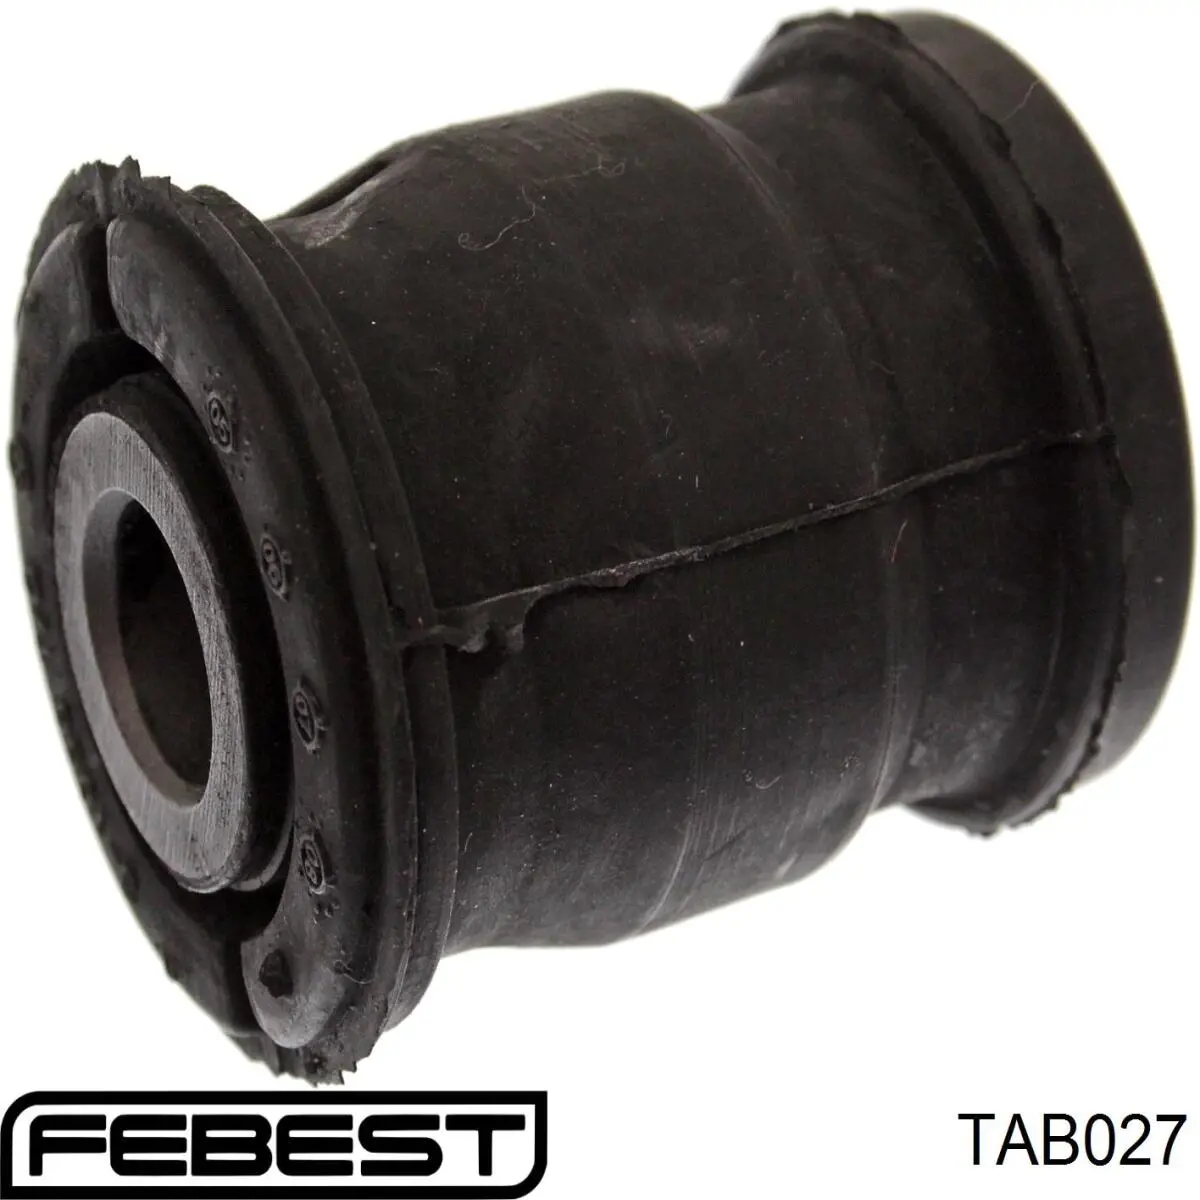 TAB027 Febest silentblock de suspensión delantero inferior